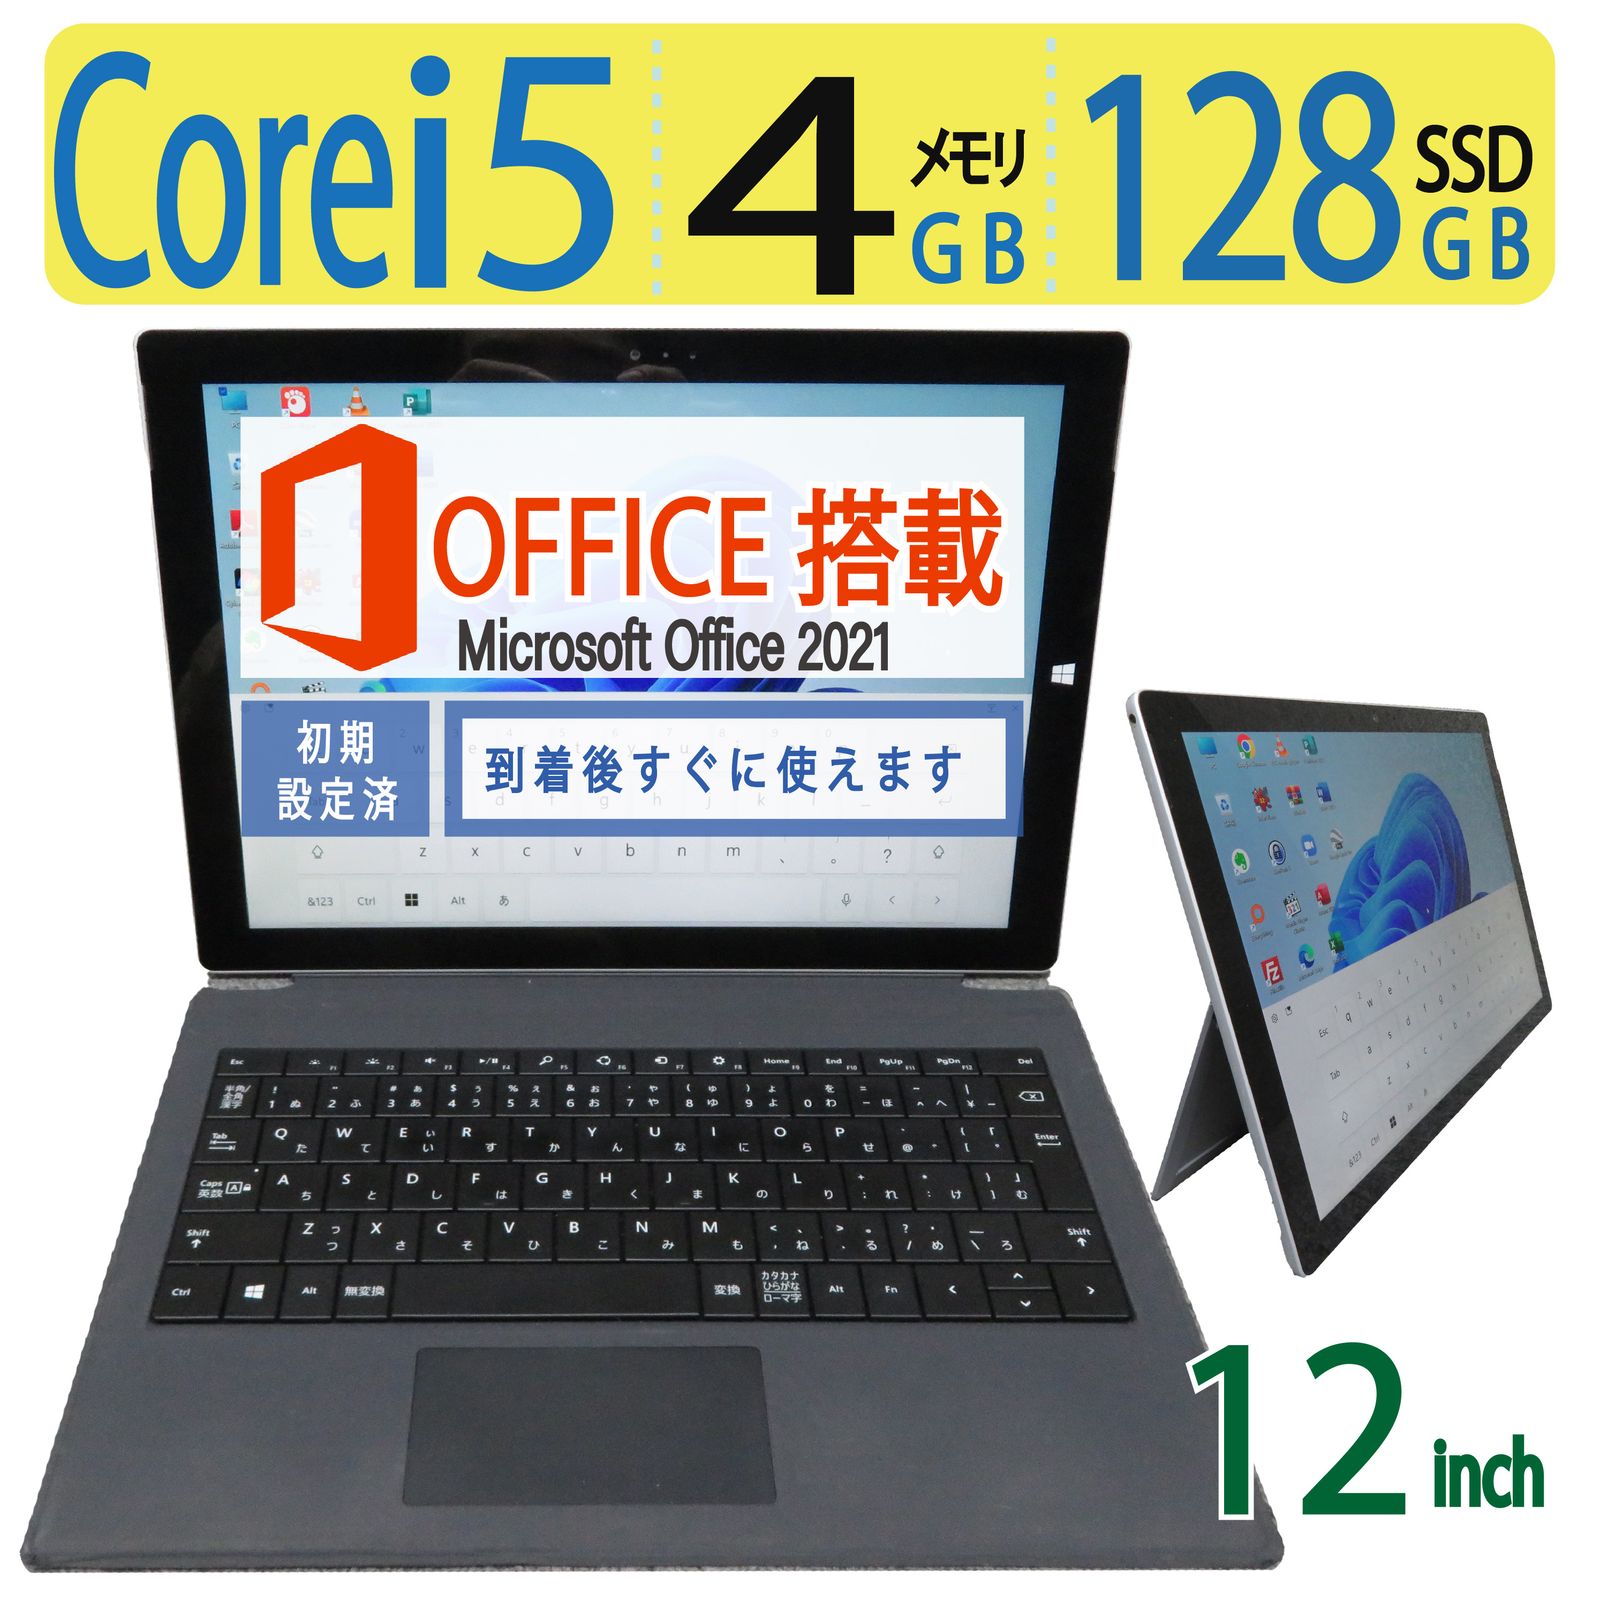 SSD128GB 12型 Microsoft Surface Pro3 i5 - PC/タブレット